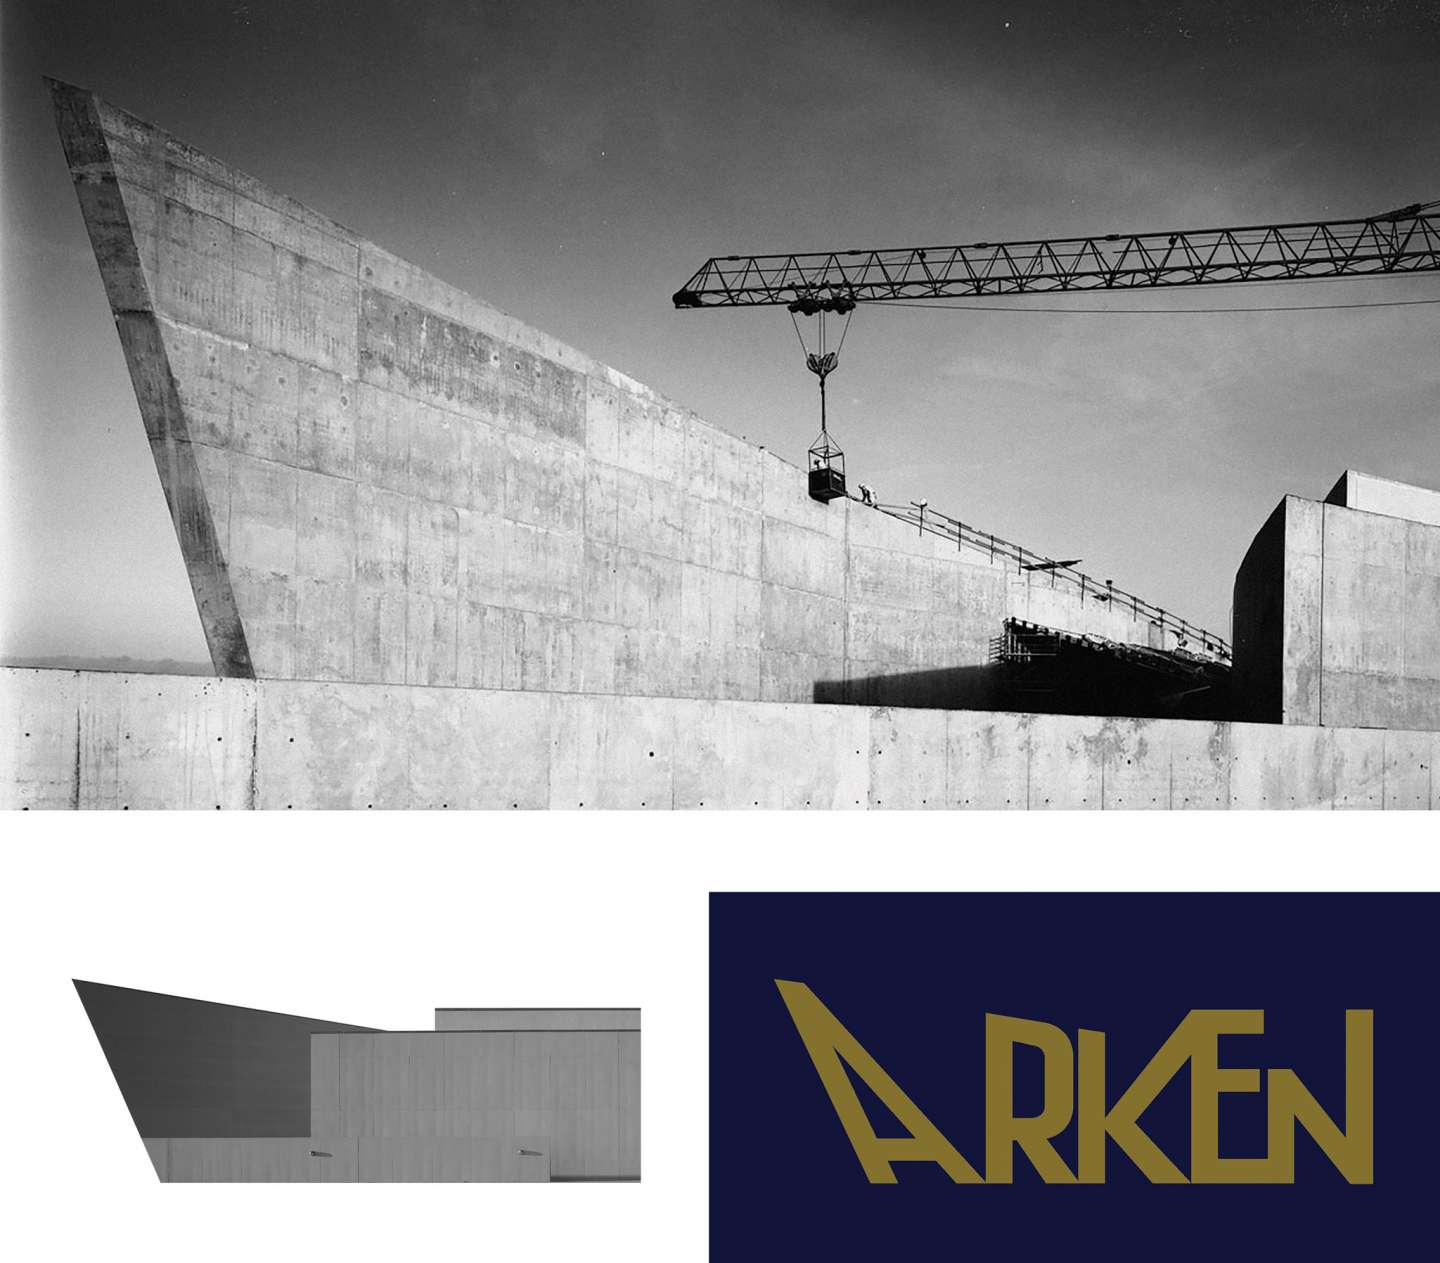 Arken Museum of Modern Art